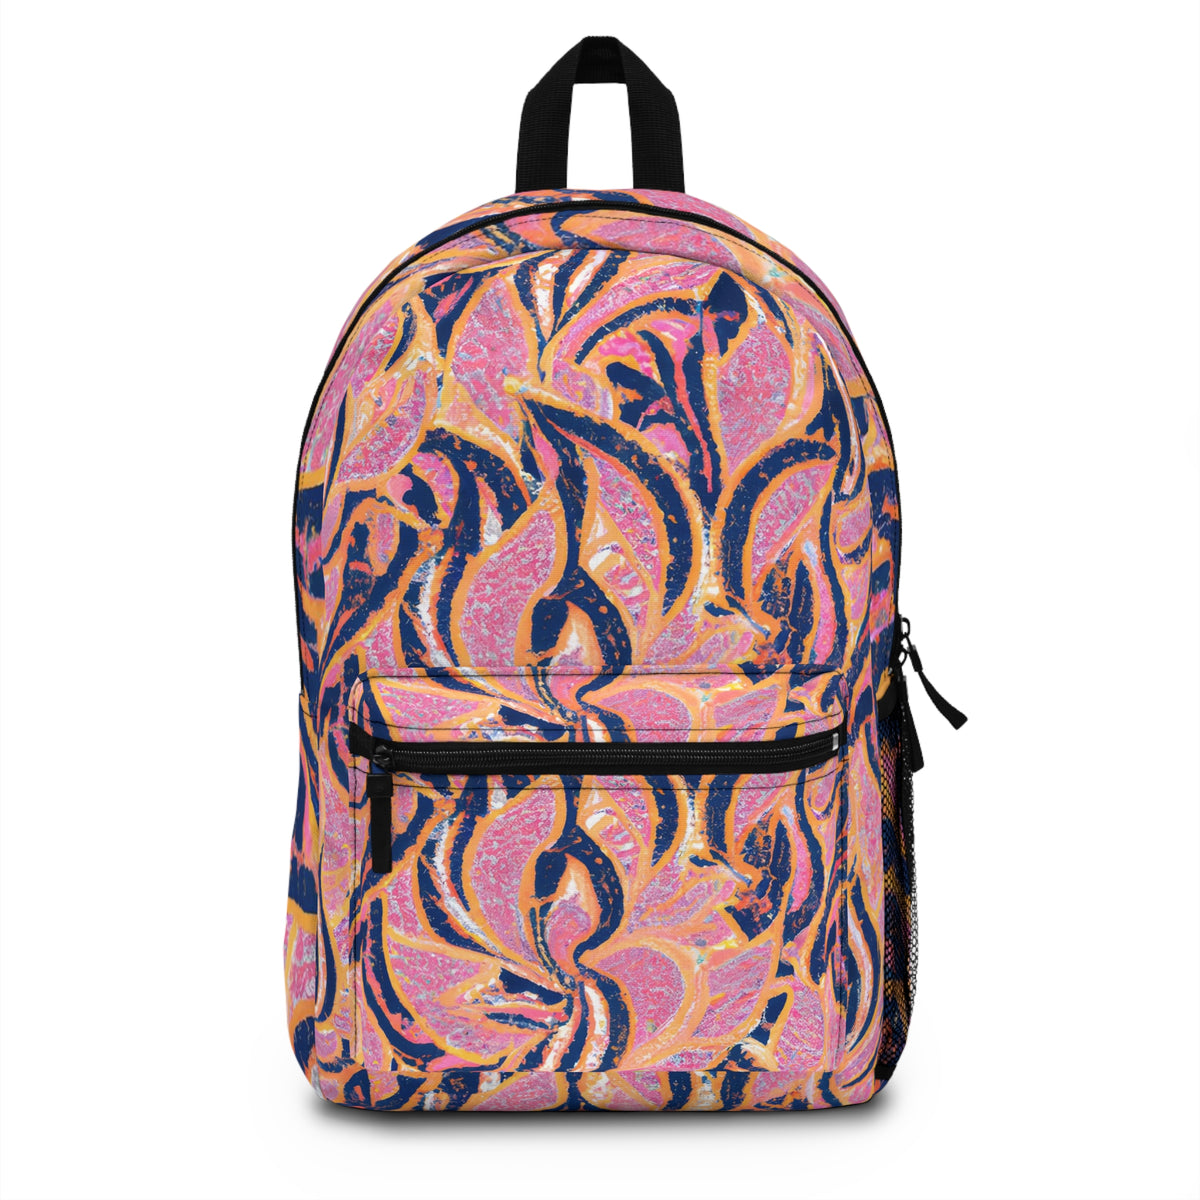 FrunzelStar - Gay-Inspired Backpack